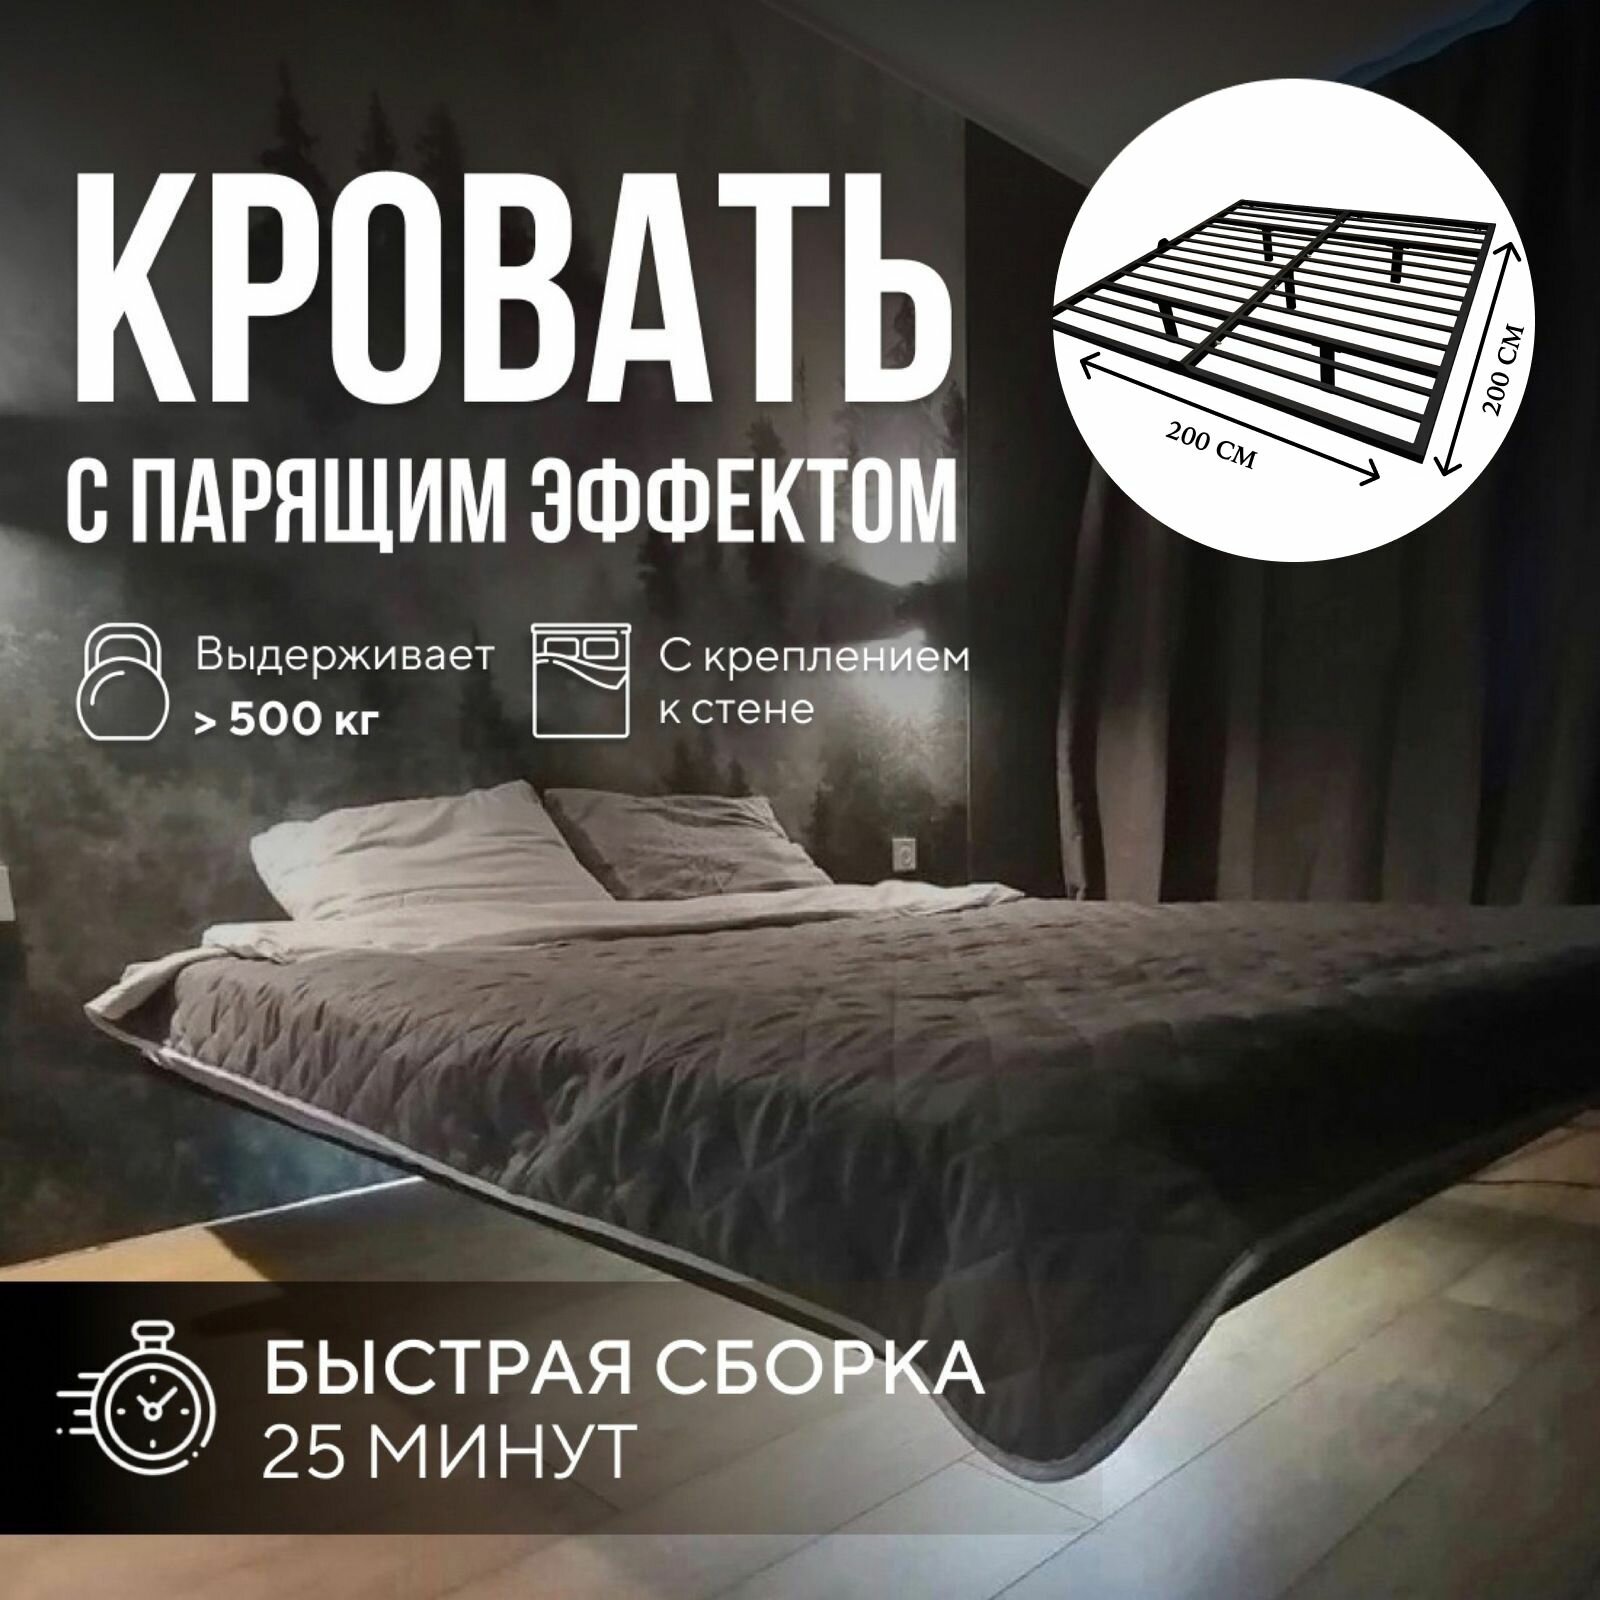 Парящая двуспальная кровать 200х200 см. Белый металлический каркас - основание с креплением к стене, 5 ножек